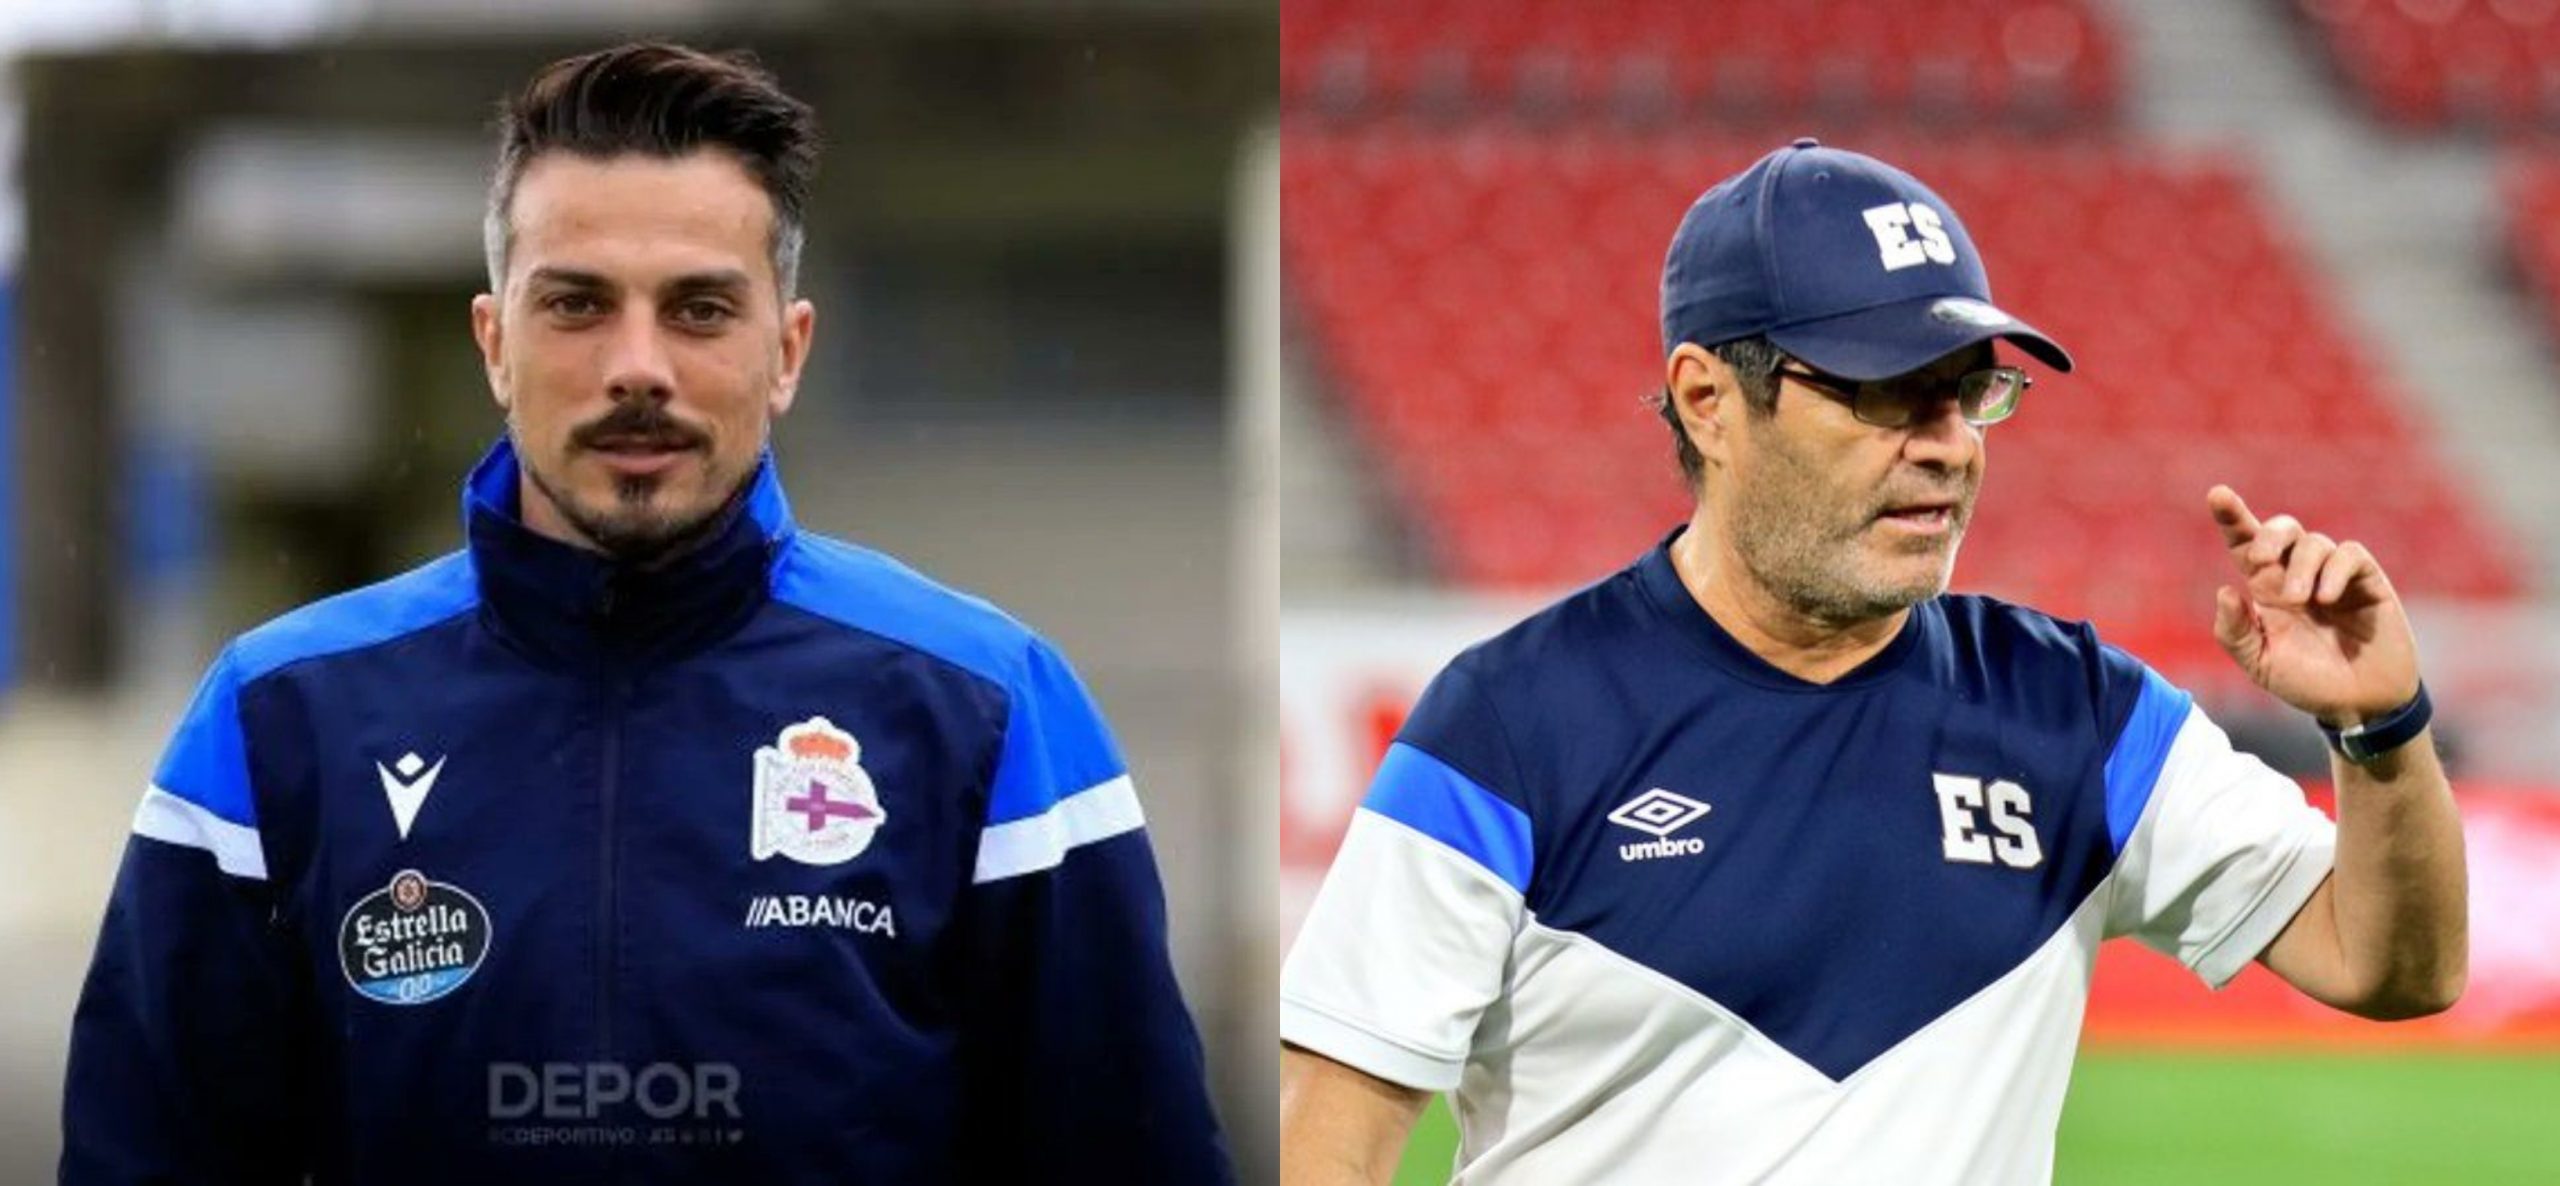 FESFUT] Rubén de la Barrera is the new coach of the El Salvador national  team : r/soccer